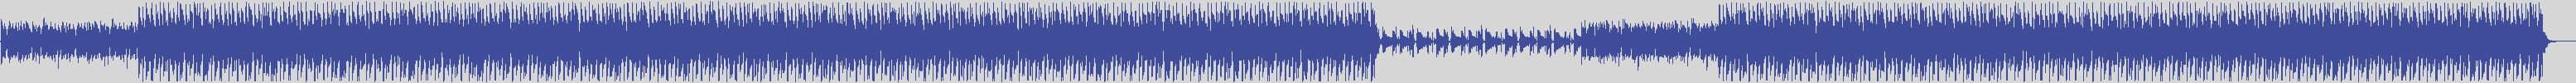 noclouds_chillout [NOC142] Venus - Mundos [Original Mix] audio wave form